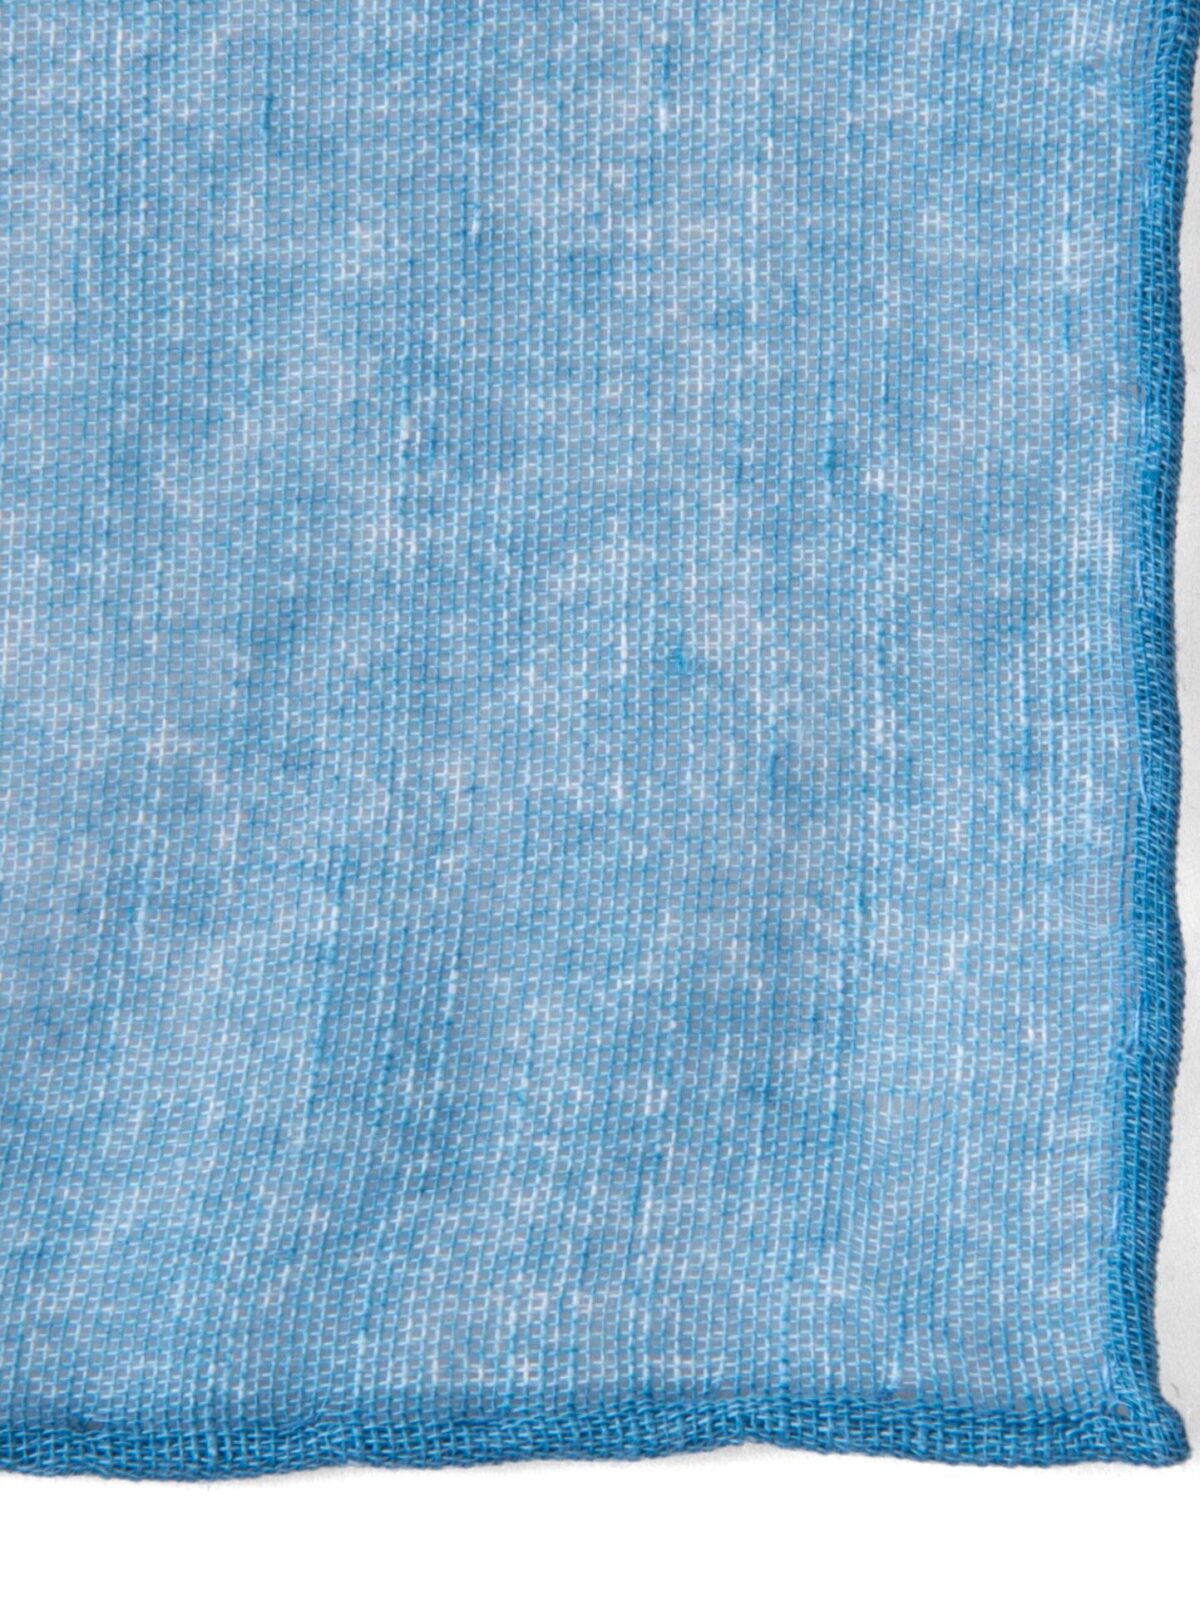 Turquoise Cotton Linen Pocket Square